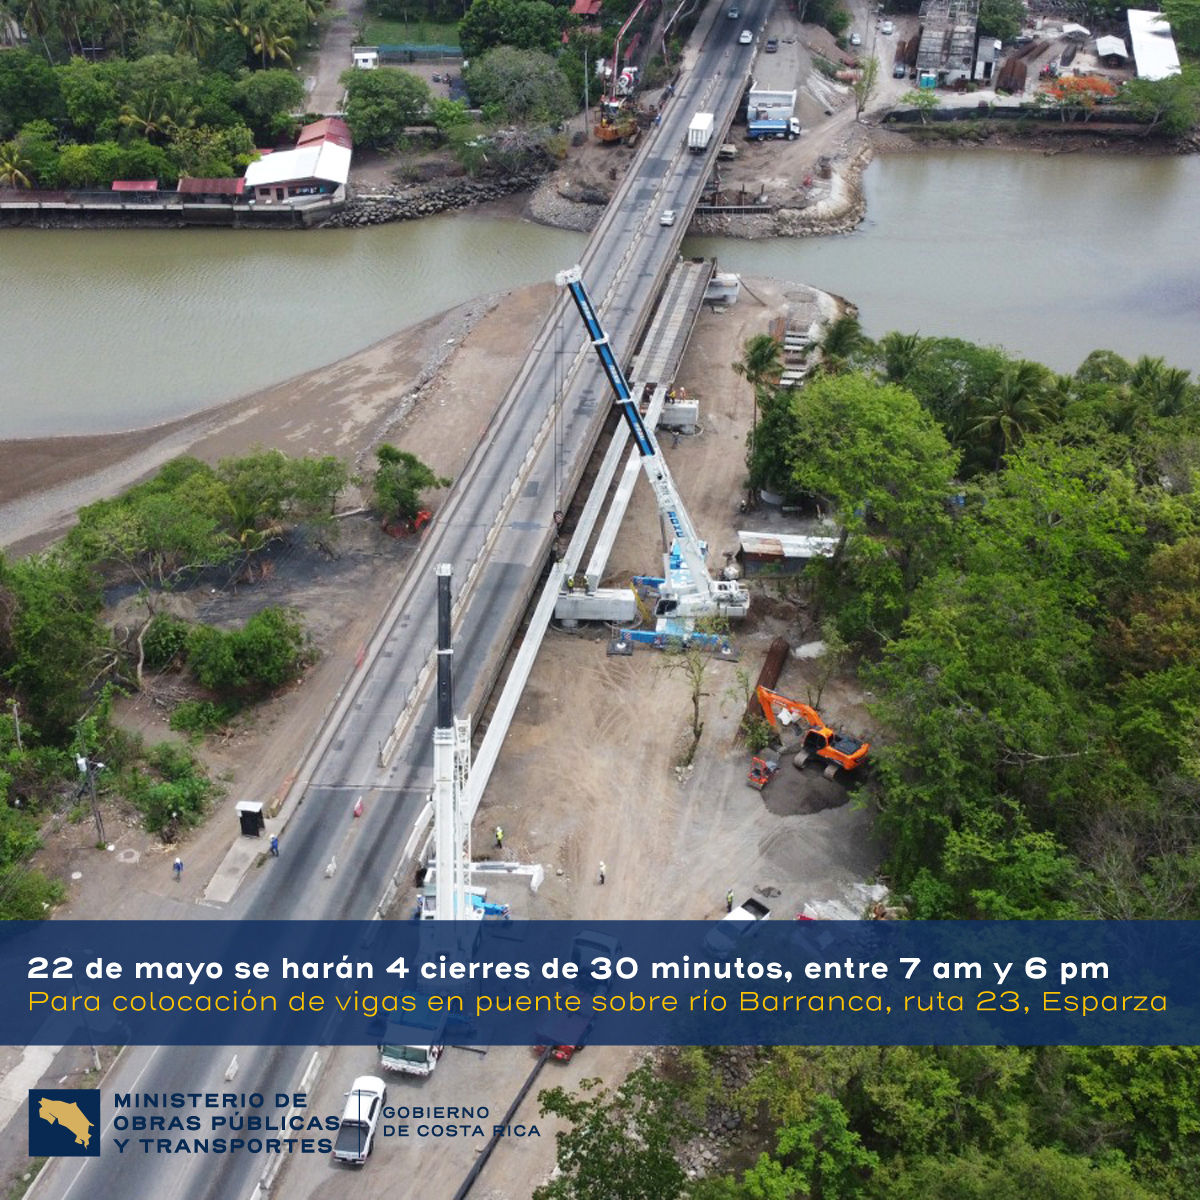 Puente sobre el río Barranca: Costa Rica colocó las primeras vigas para un tercer carril